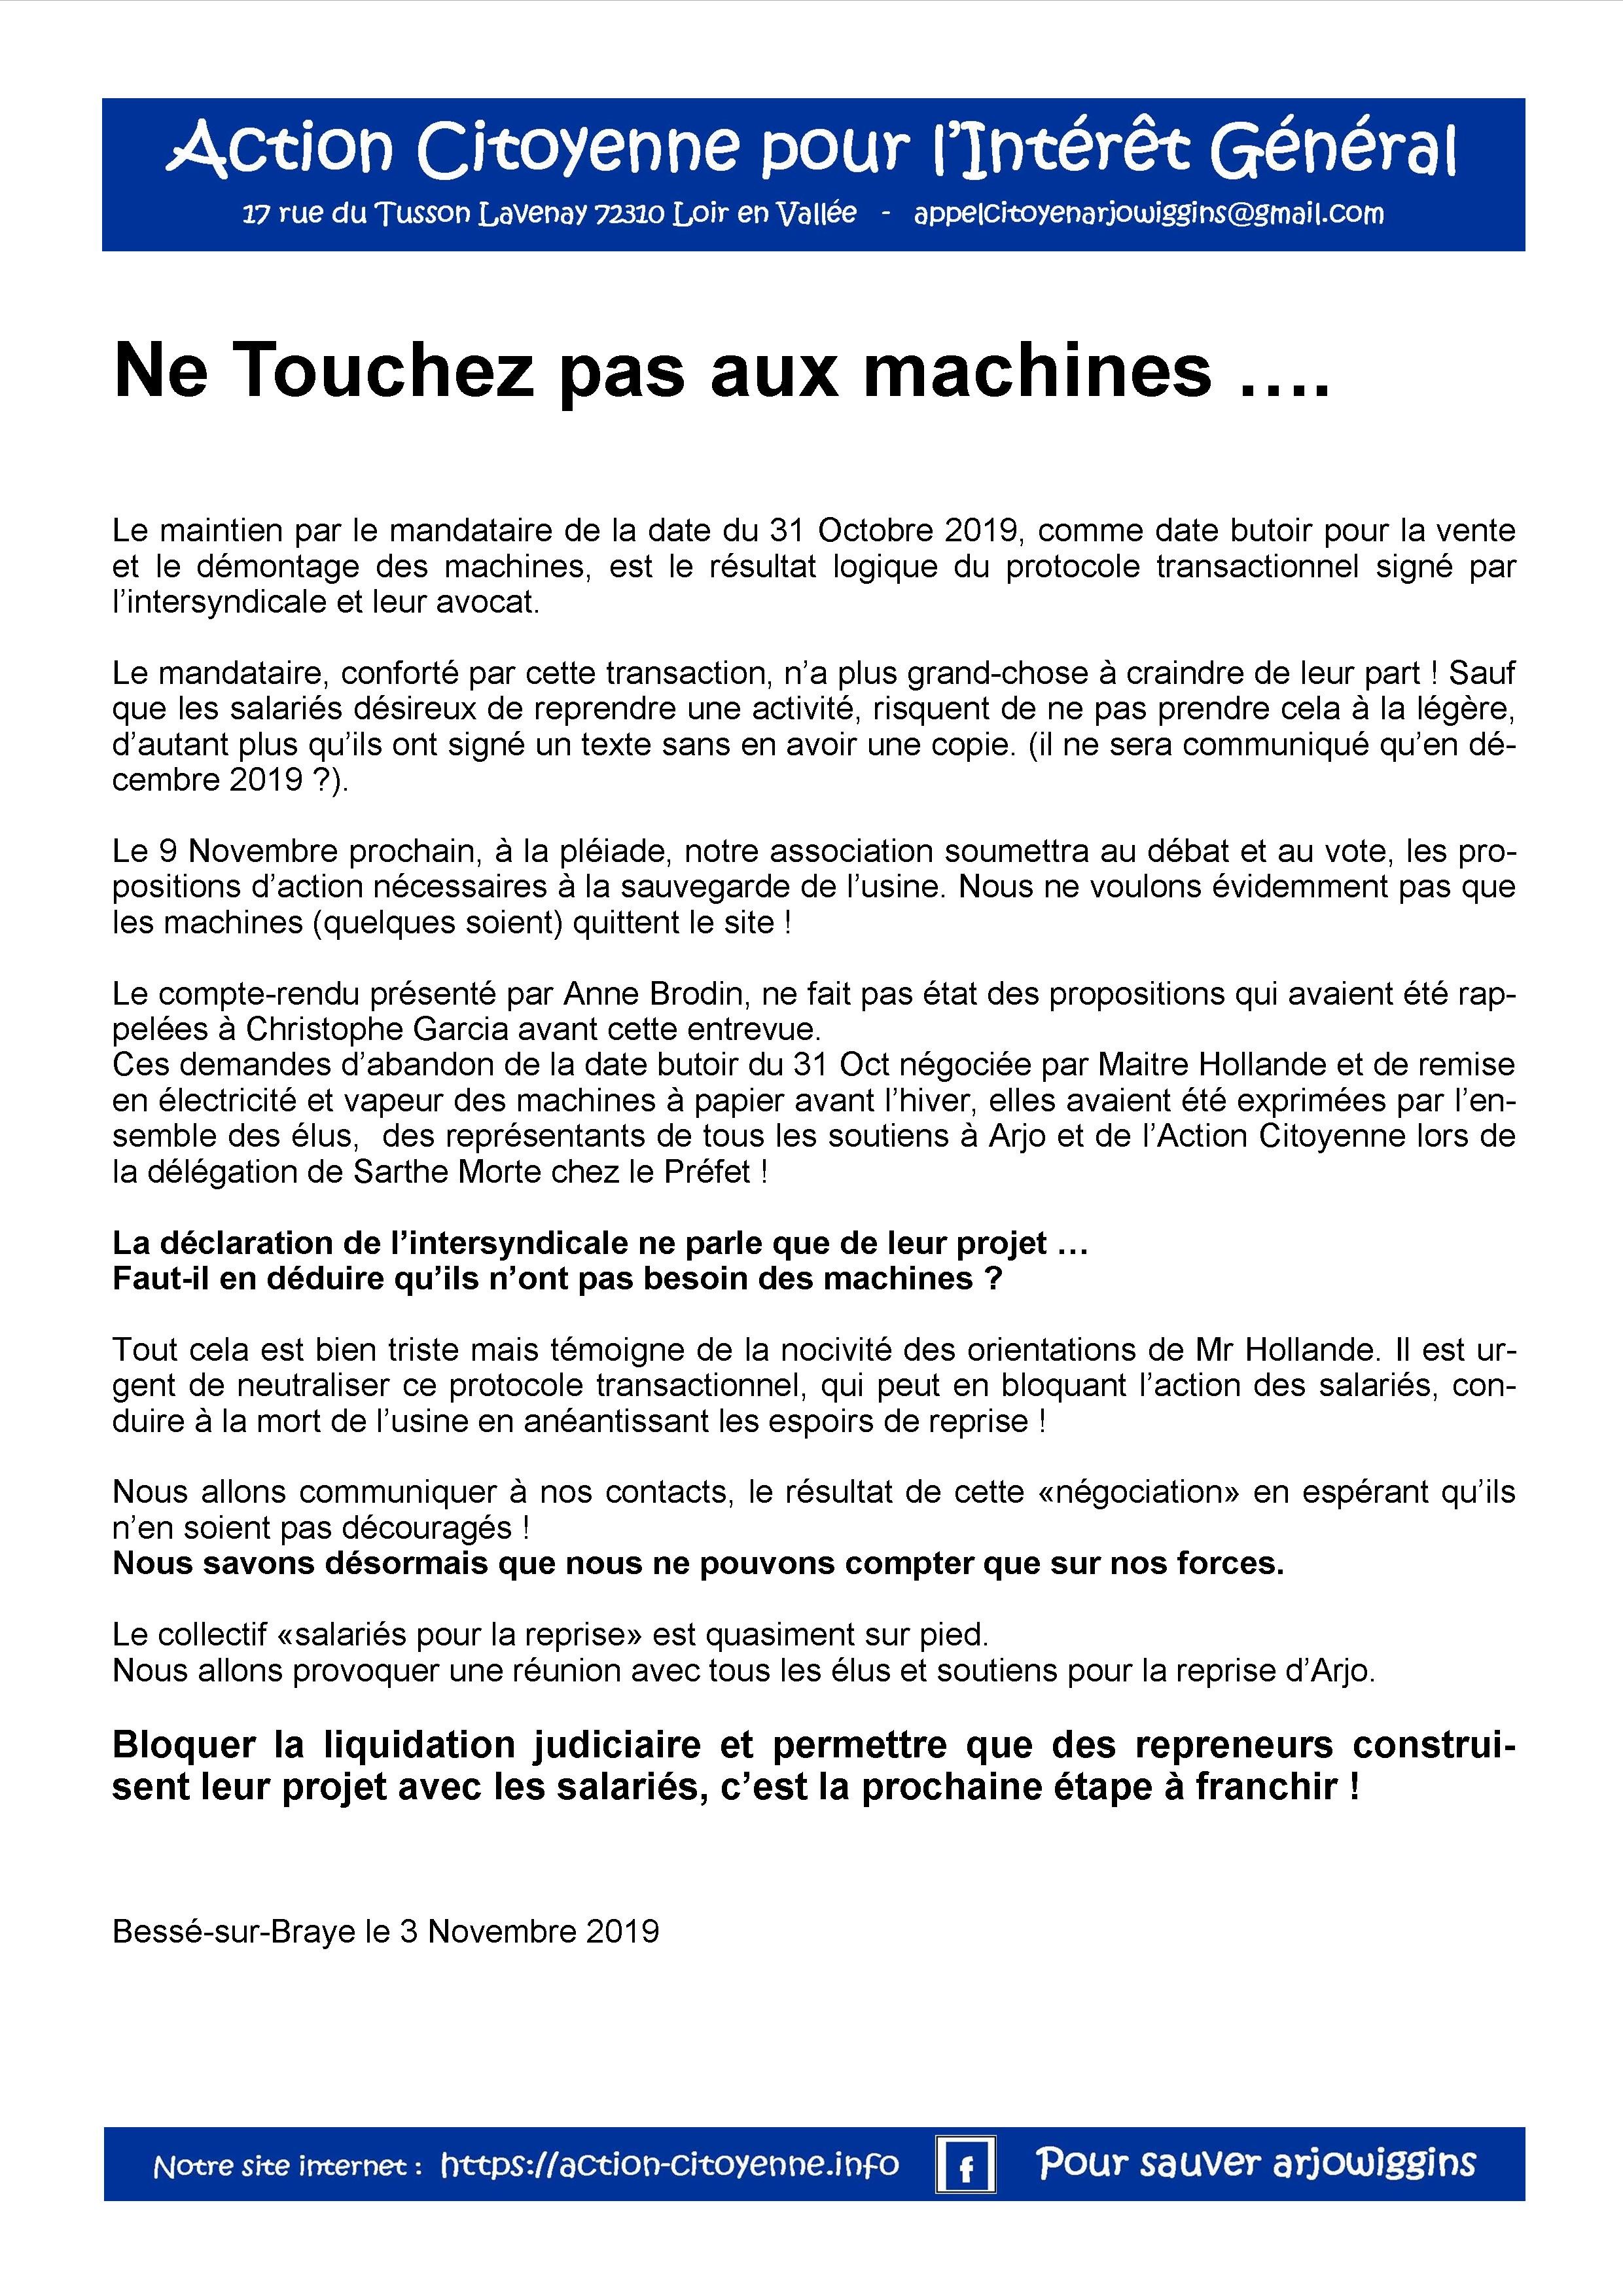 Ne touchez pas aux machines 041119